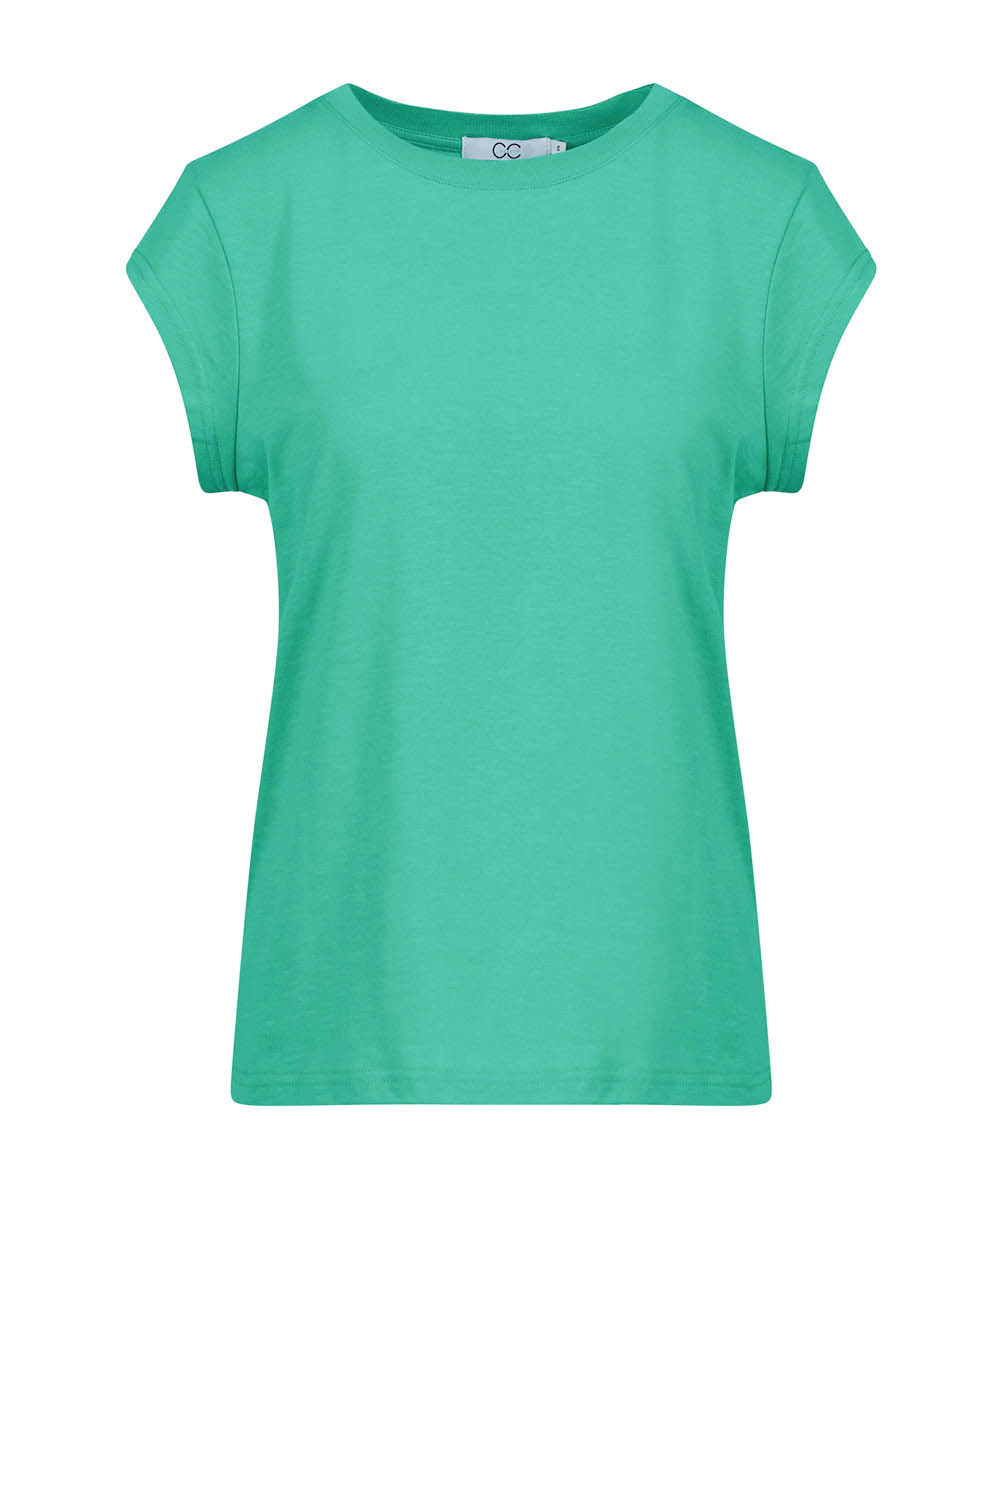 CC HEART Dames Tops & T-shirts Basic T-shirt Groen